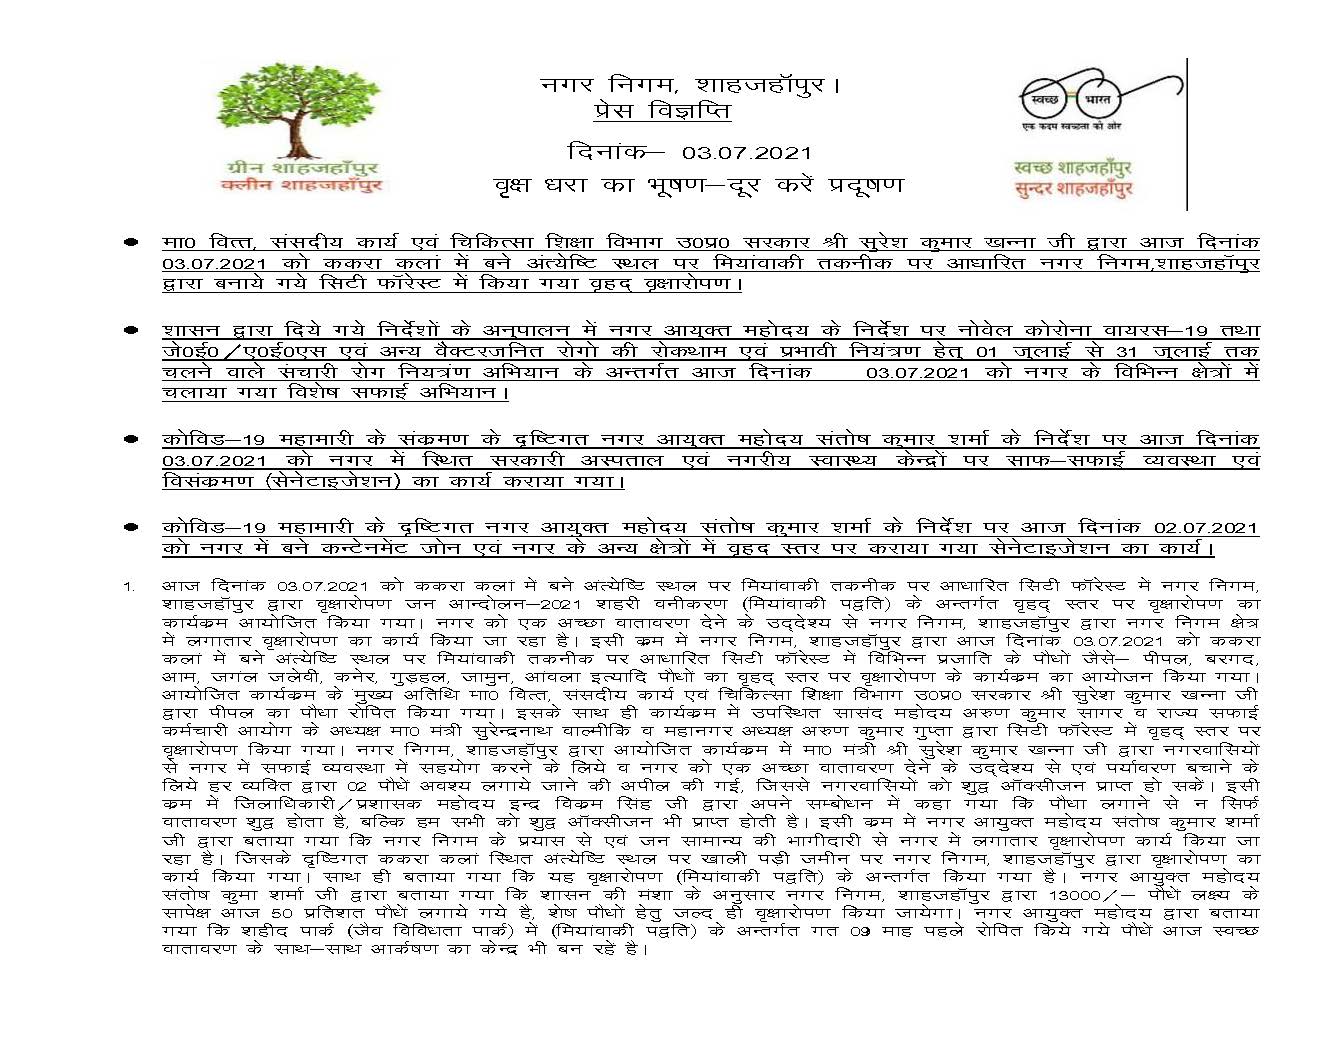 मा0 मंत्री, श्री सुरेश कुमार खन्ना जी द्वारा दिनांक 03-07-2021 को सिटी फॉरेस्ट में किया गया वृहद् वृक्षारोपण।